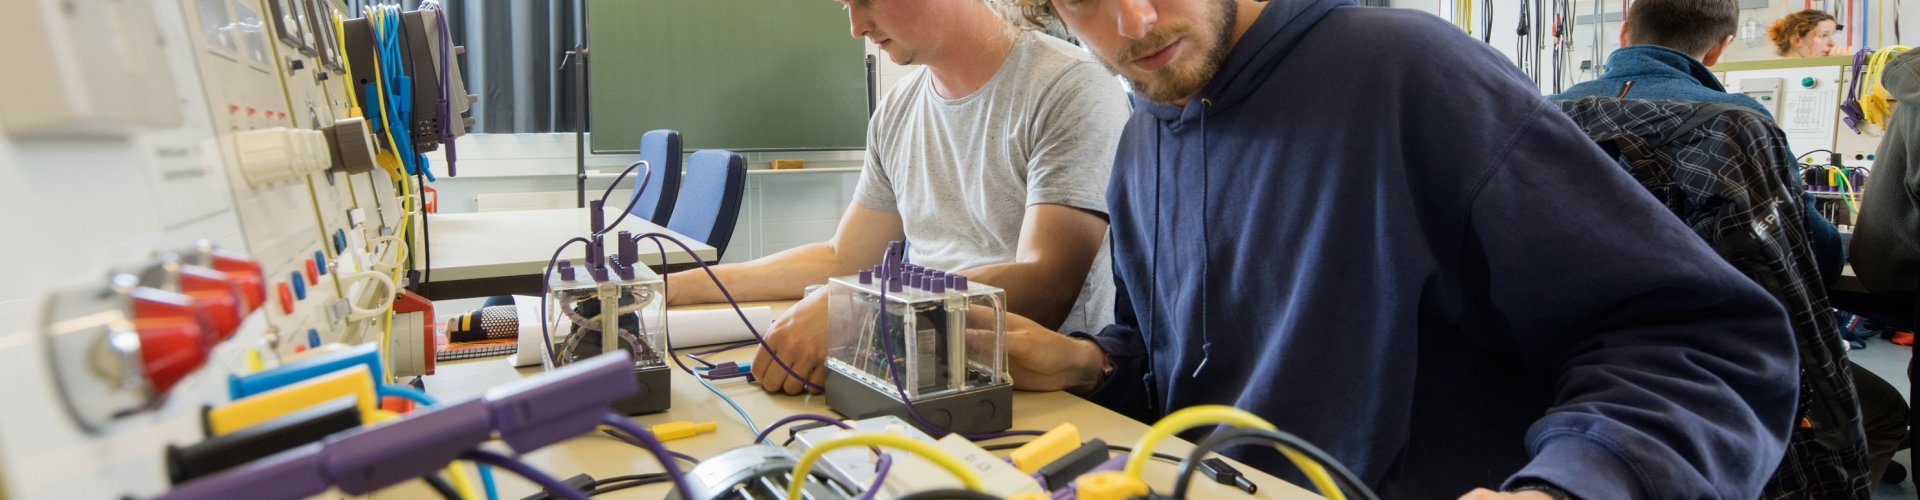 Zwei Studenten arbeiten an einer elektrotechnischen Maschine, zu sehen sind Kabel in unterschiedlichen Fraben und rote Leuchten. Im Hintergrund eine Tafel und weitere Studierende, die an ähnlichen Versuchen arbeiten.